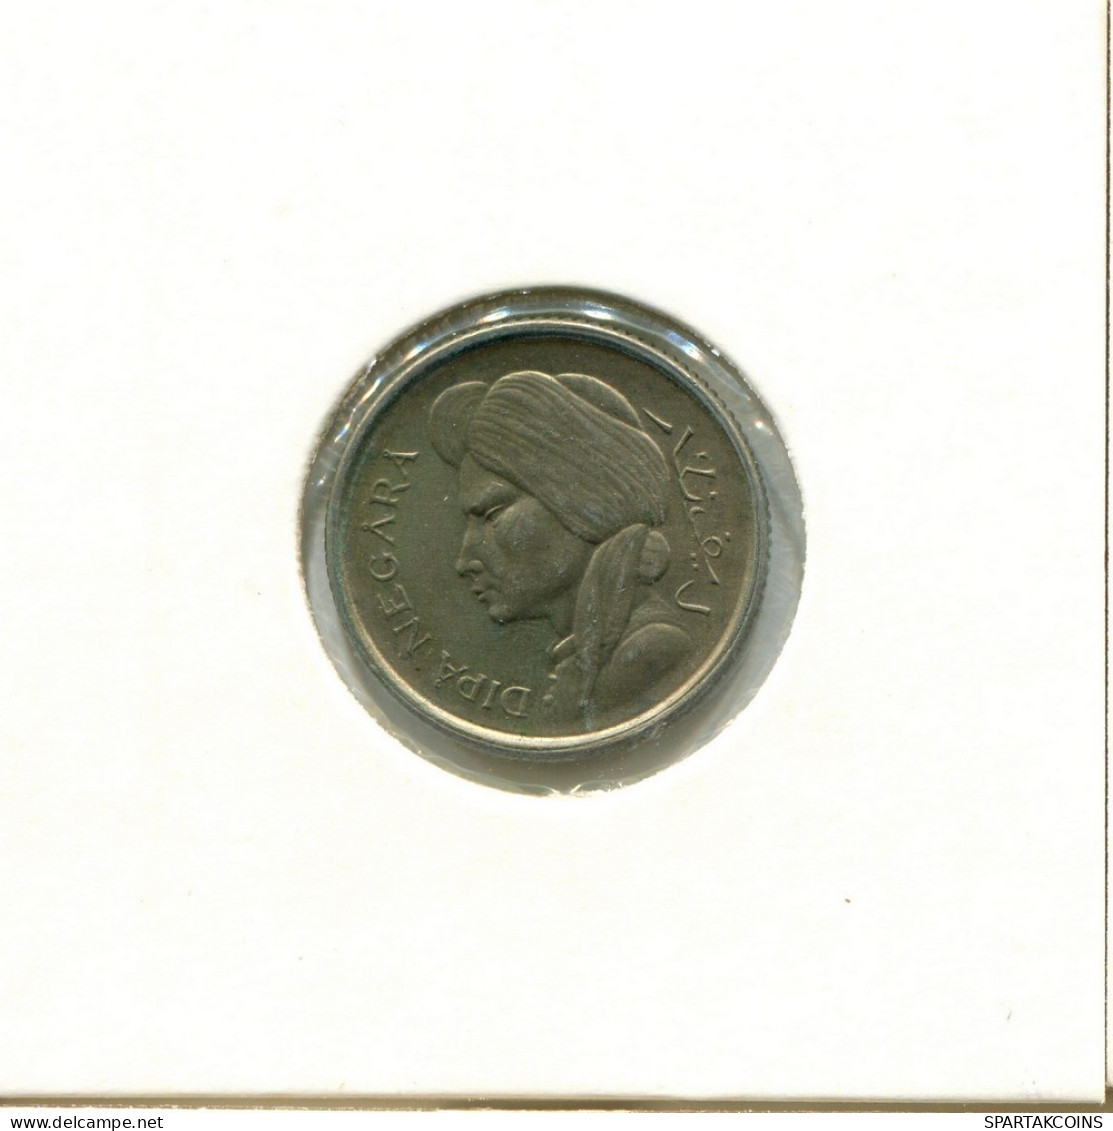 50 SEN 1952 INDONESISCH INDONESIA Münze #AY855.D.A - Indonésie